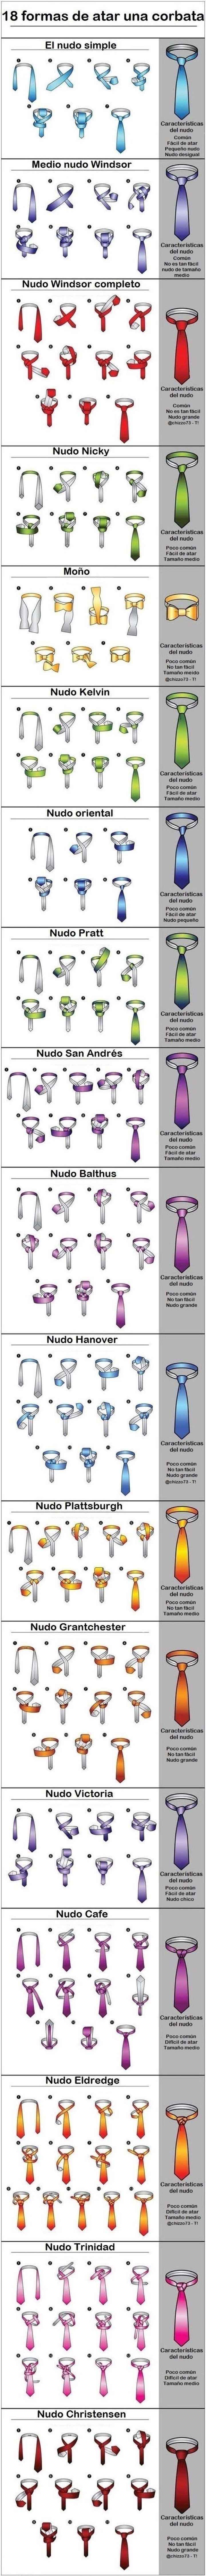 Nudos de corbata